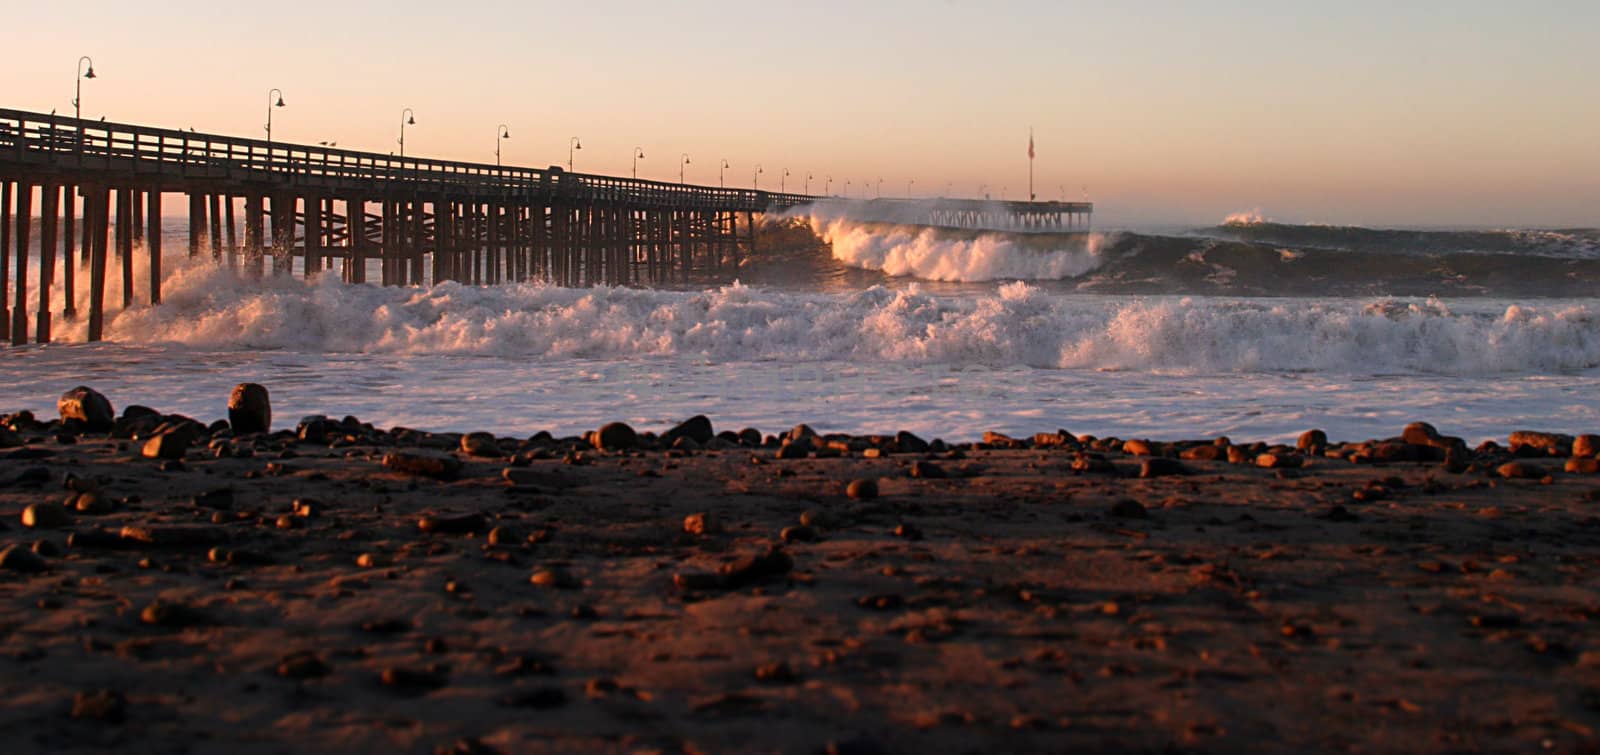 Ocean Wave Storm Pier by hlehnerer